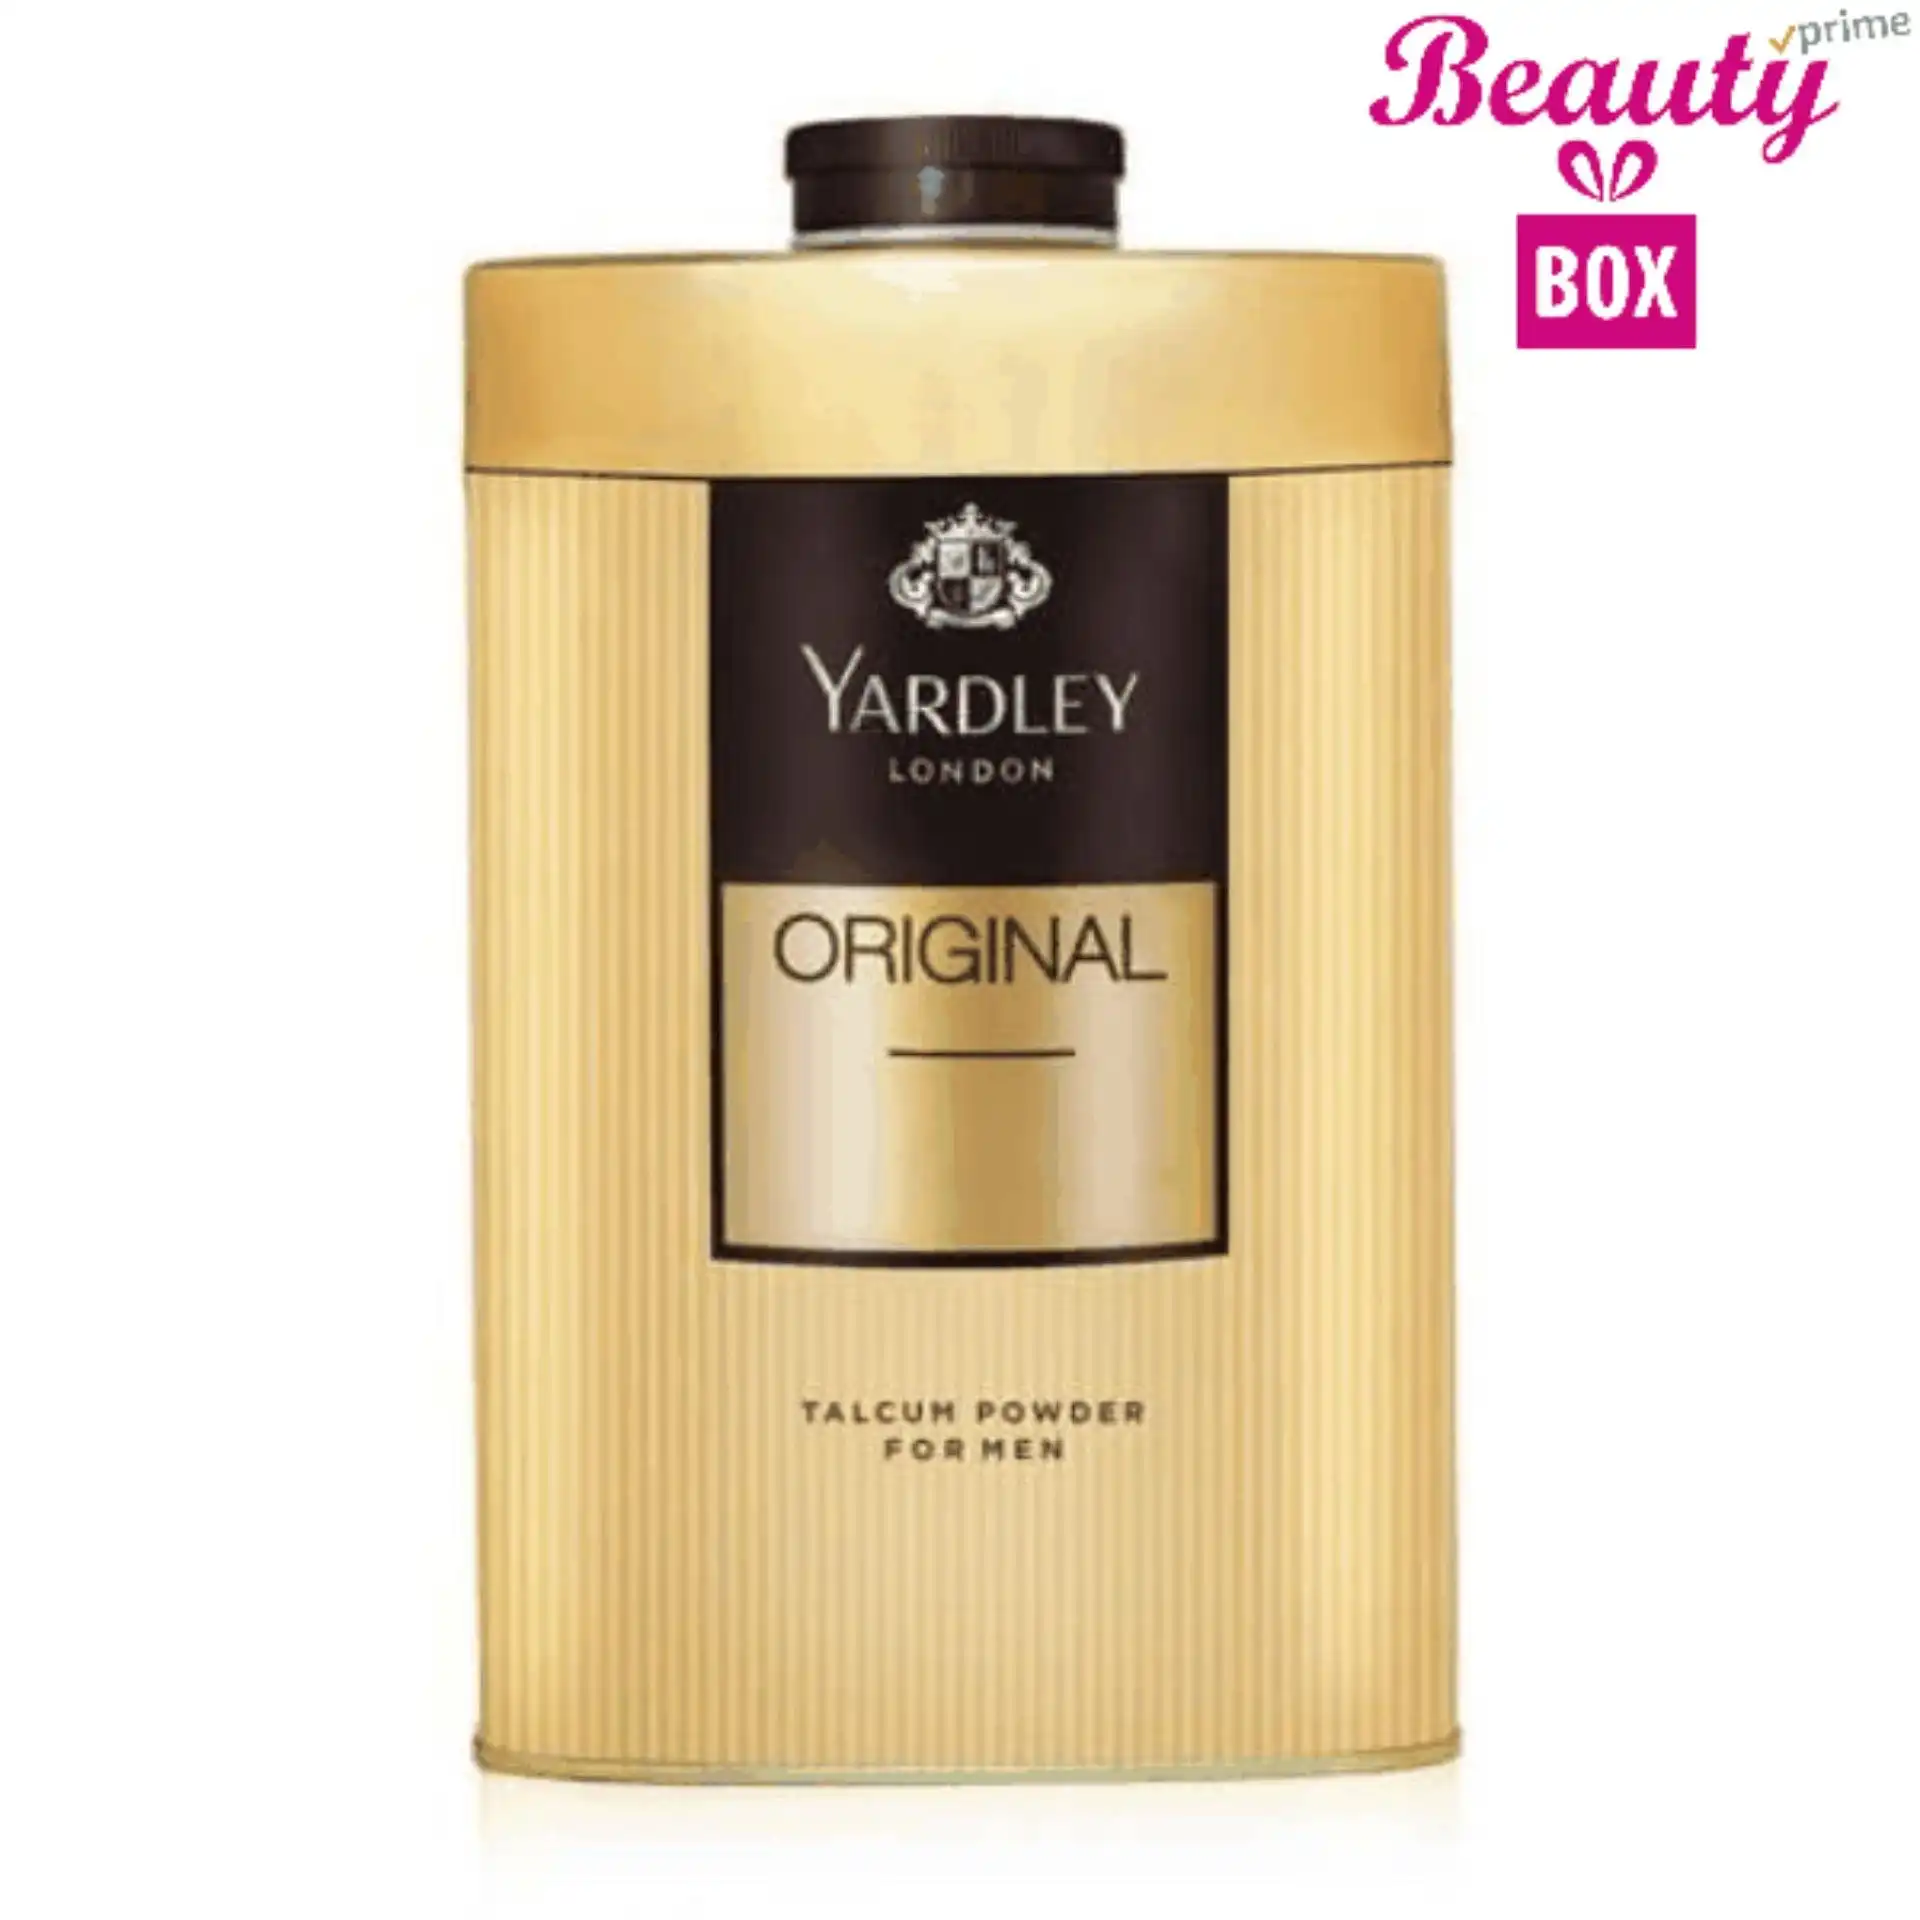 Yardley Original Talcum Powder - 150G